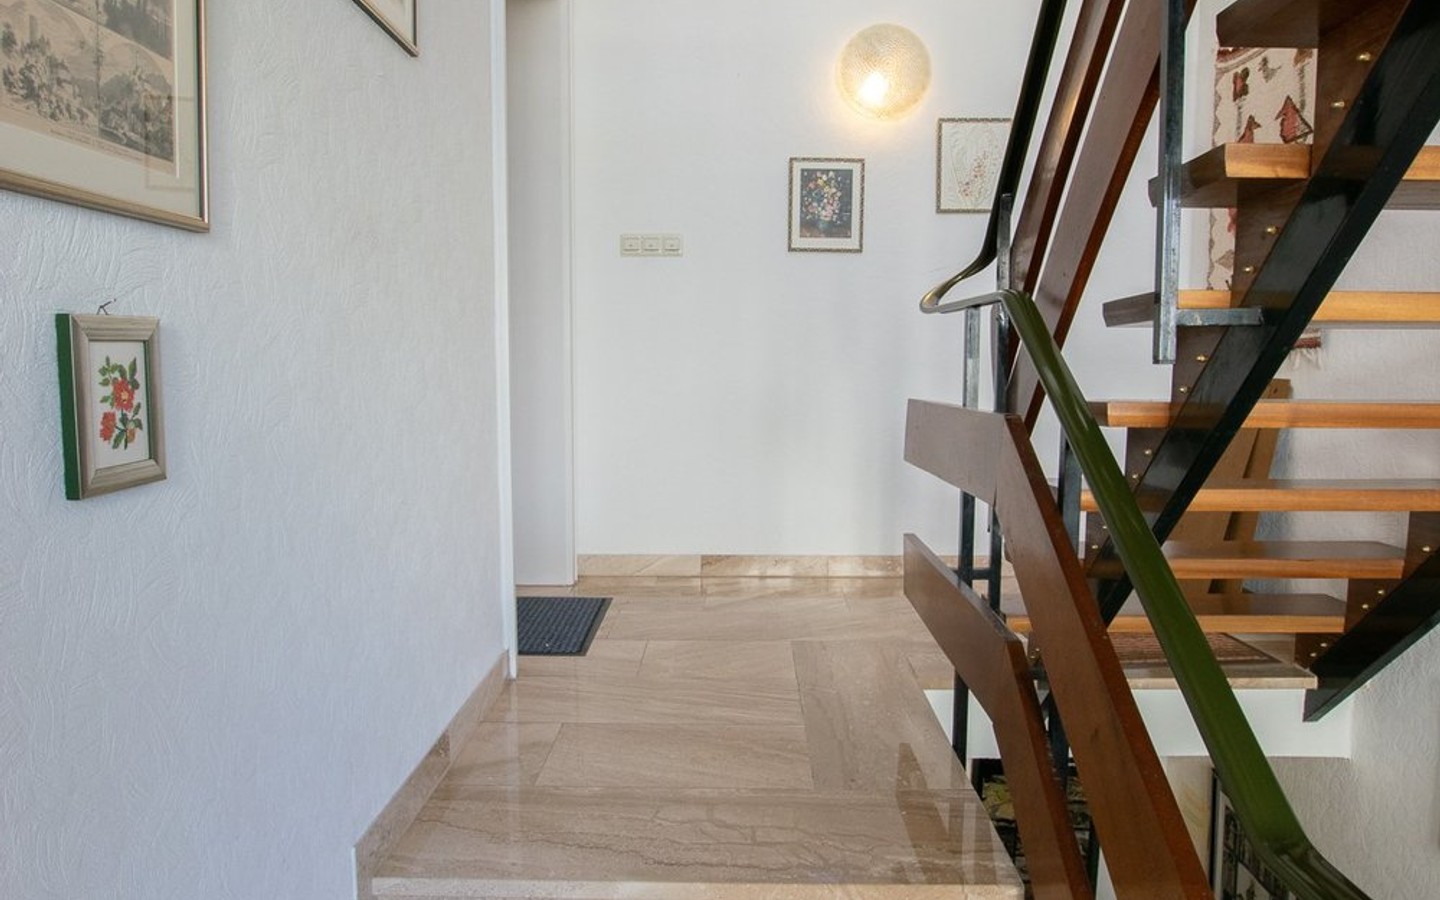 Aufgang zum Obergeschoss - Walldorf - bevorzugte und gewachsene Wohnlage; 3-Familienhaus für Kapitalanleger oder Eigennutzer